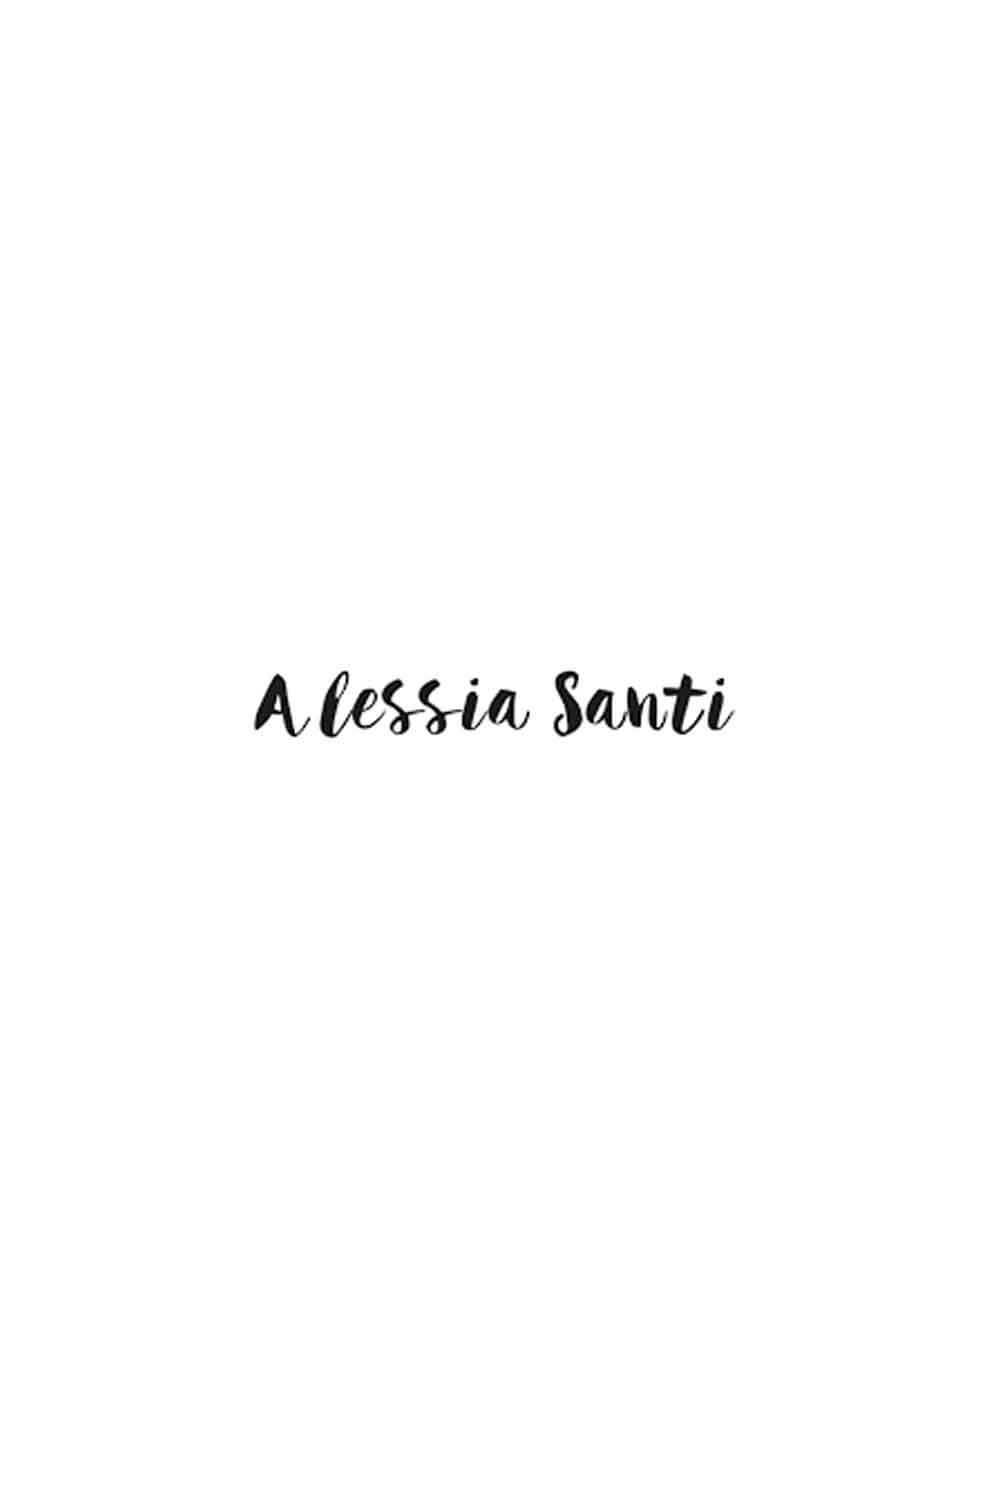 Alessia Santi